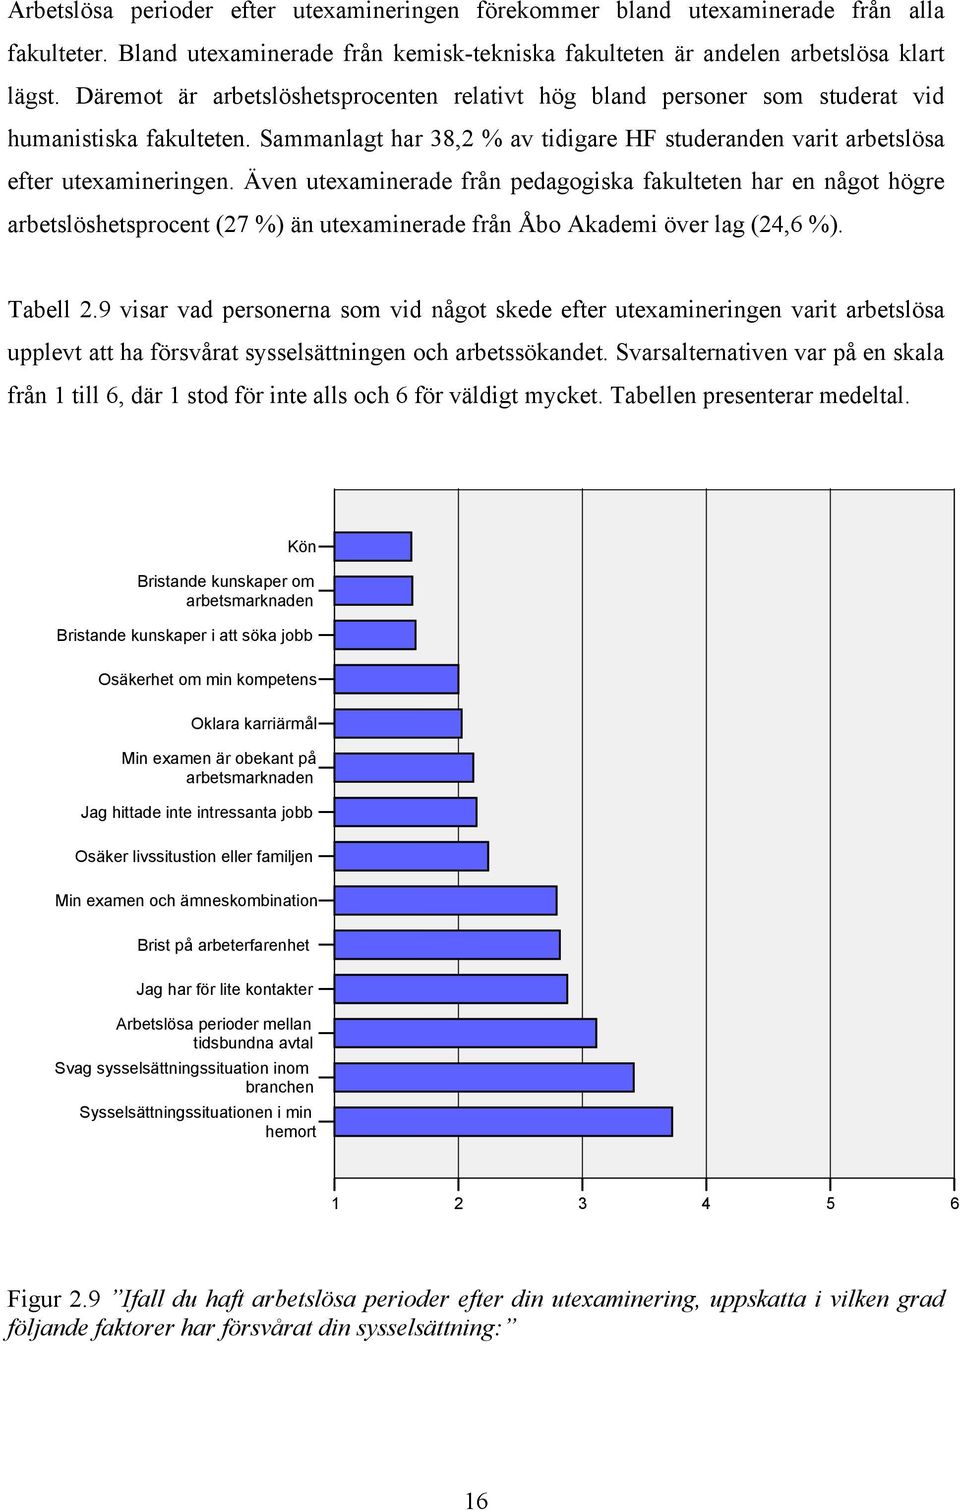 Även utexaminerade från pedagogiska fakulteten har en något högre arbetslöshetsprocent (27 %) än utexaminerade från Åbo Akademi över lag (24,6 %). Tabell 2.